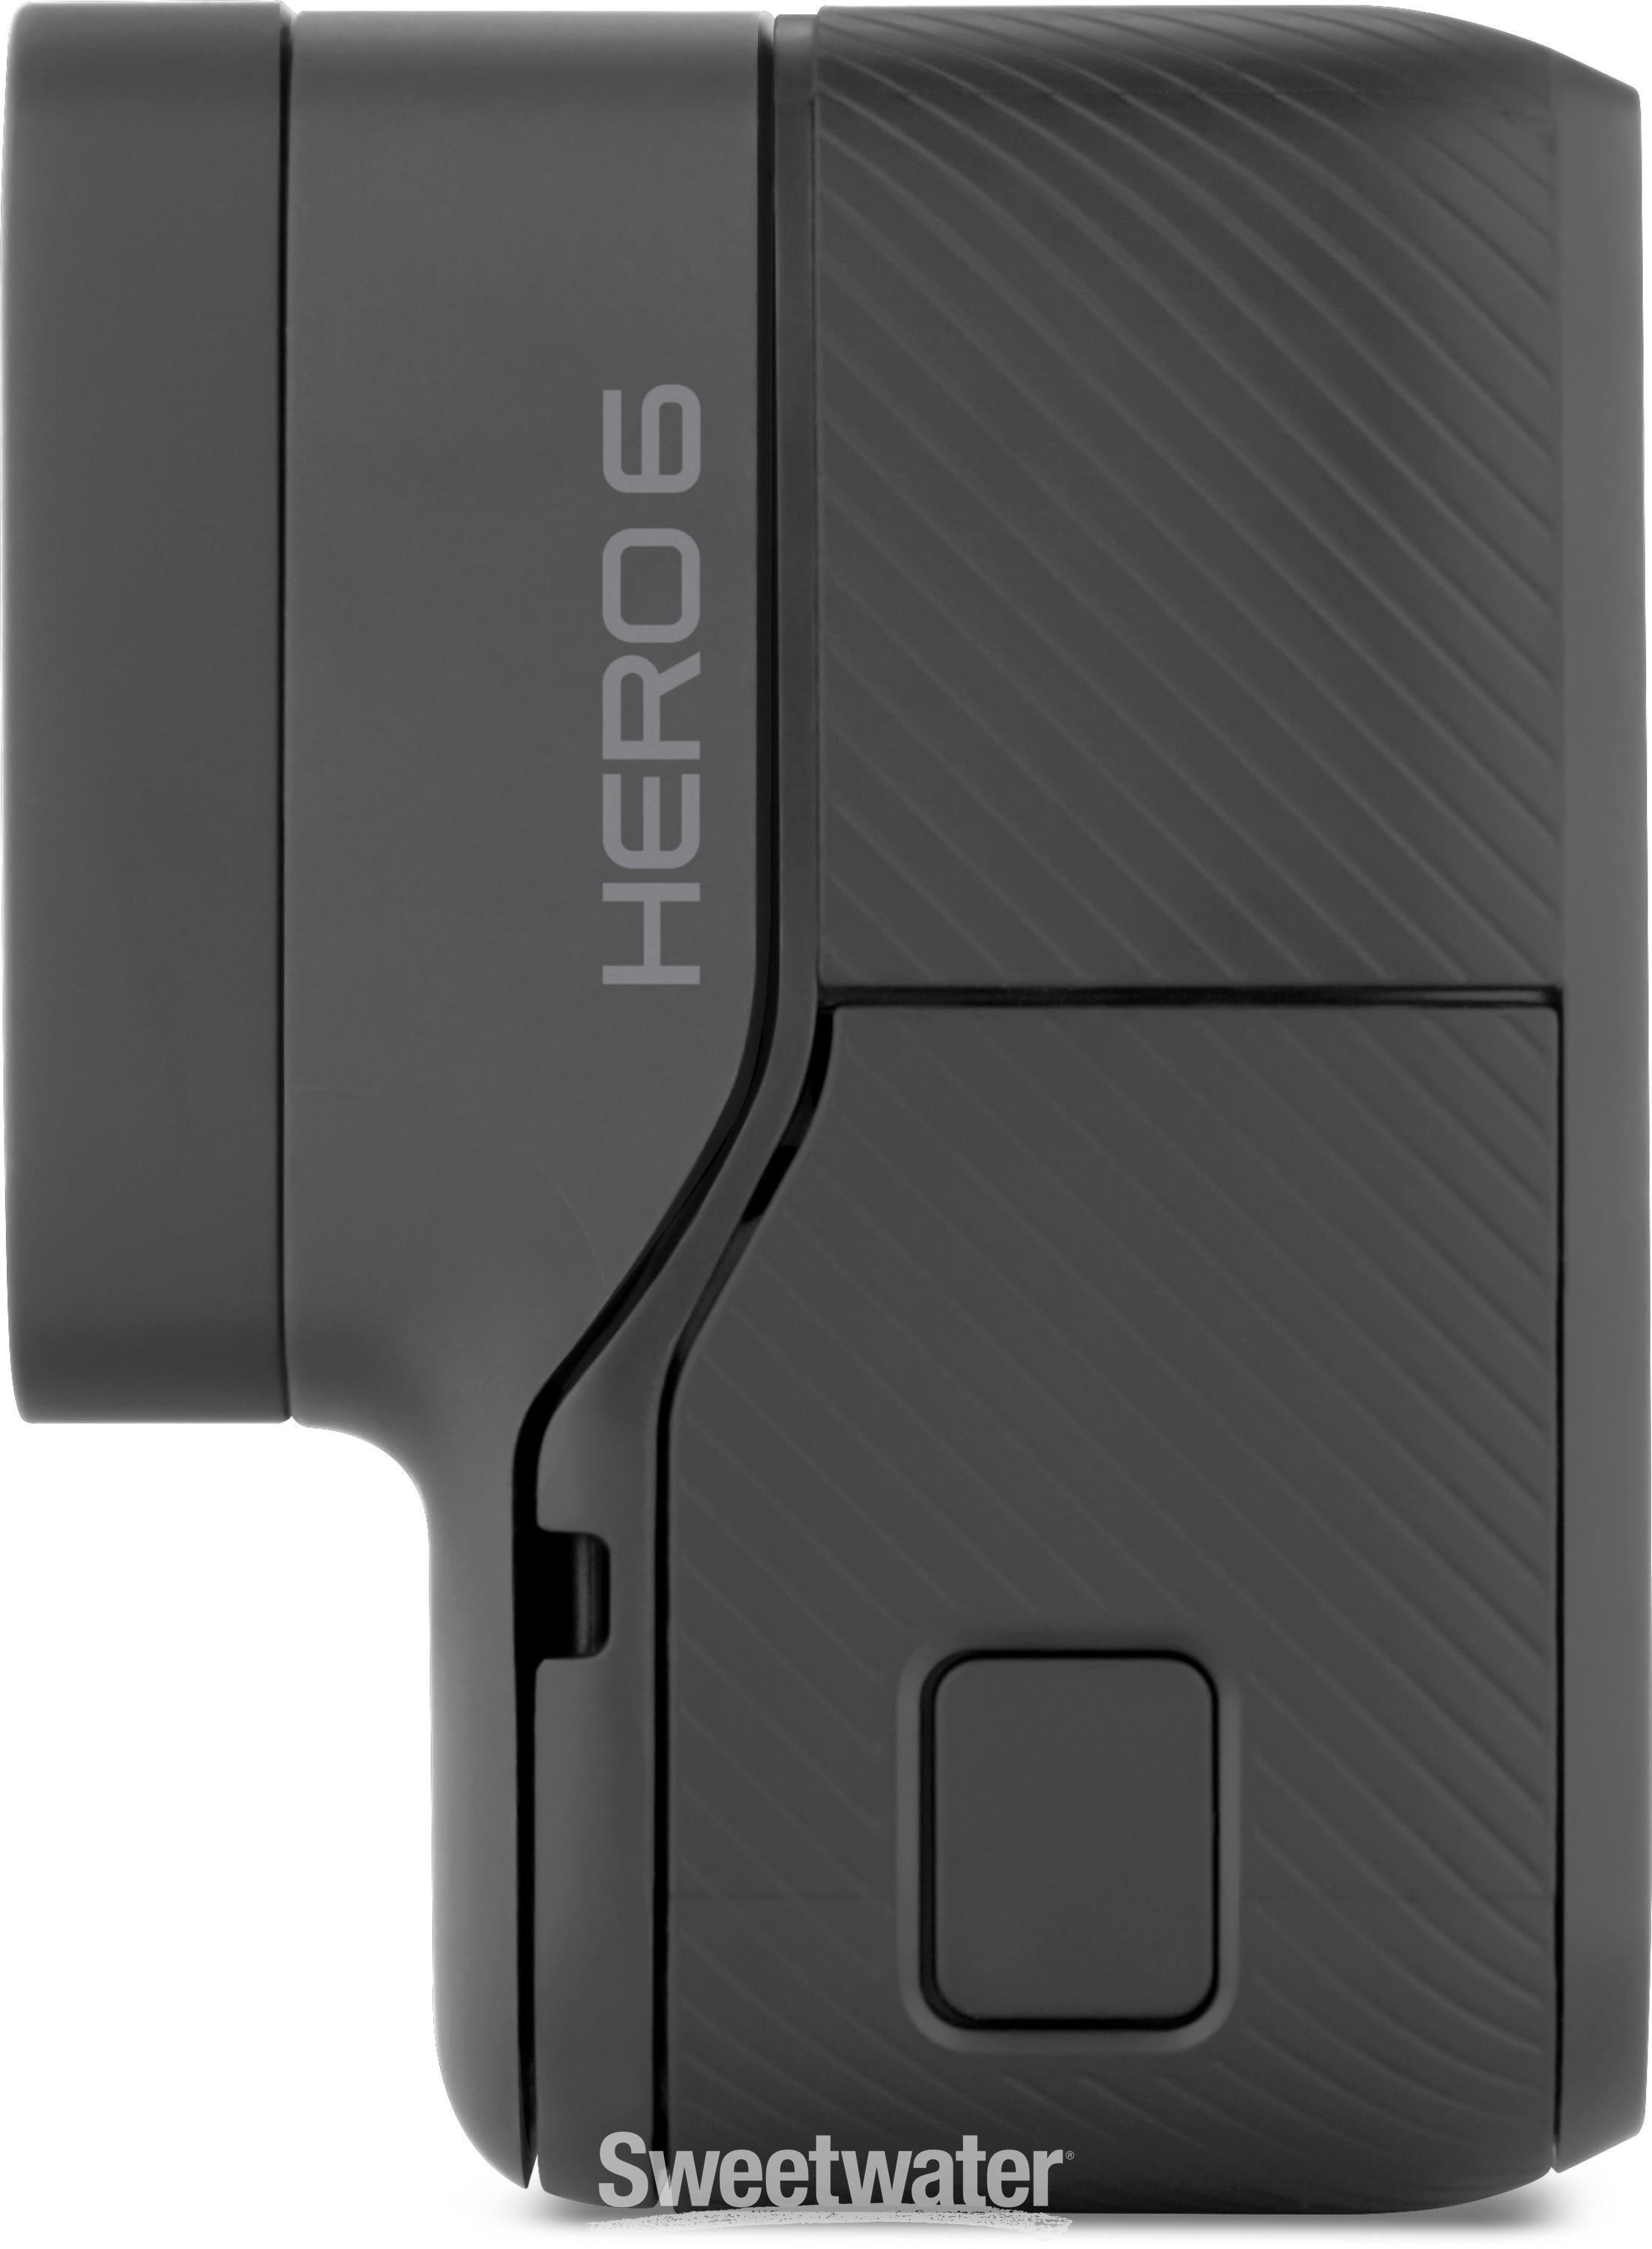 GoPro HERO6 Black w/ SD Card Bundle 4K Waterproof Action Camera